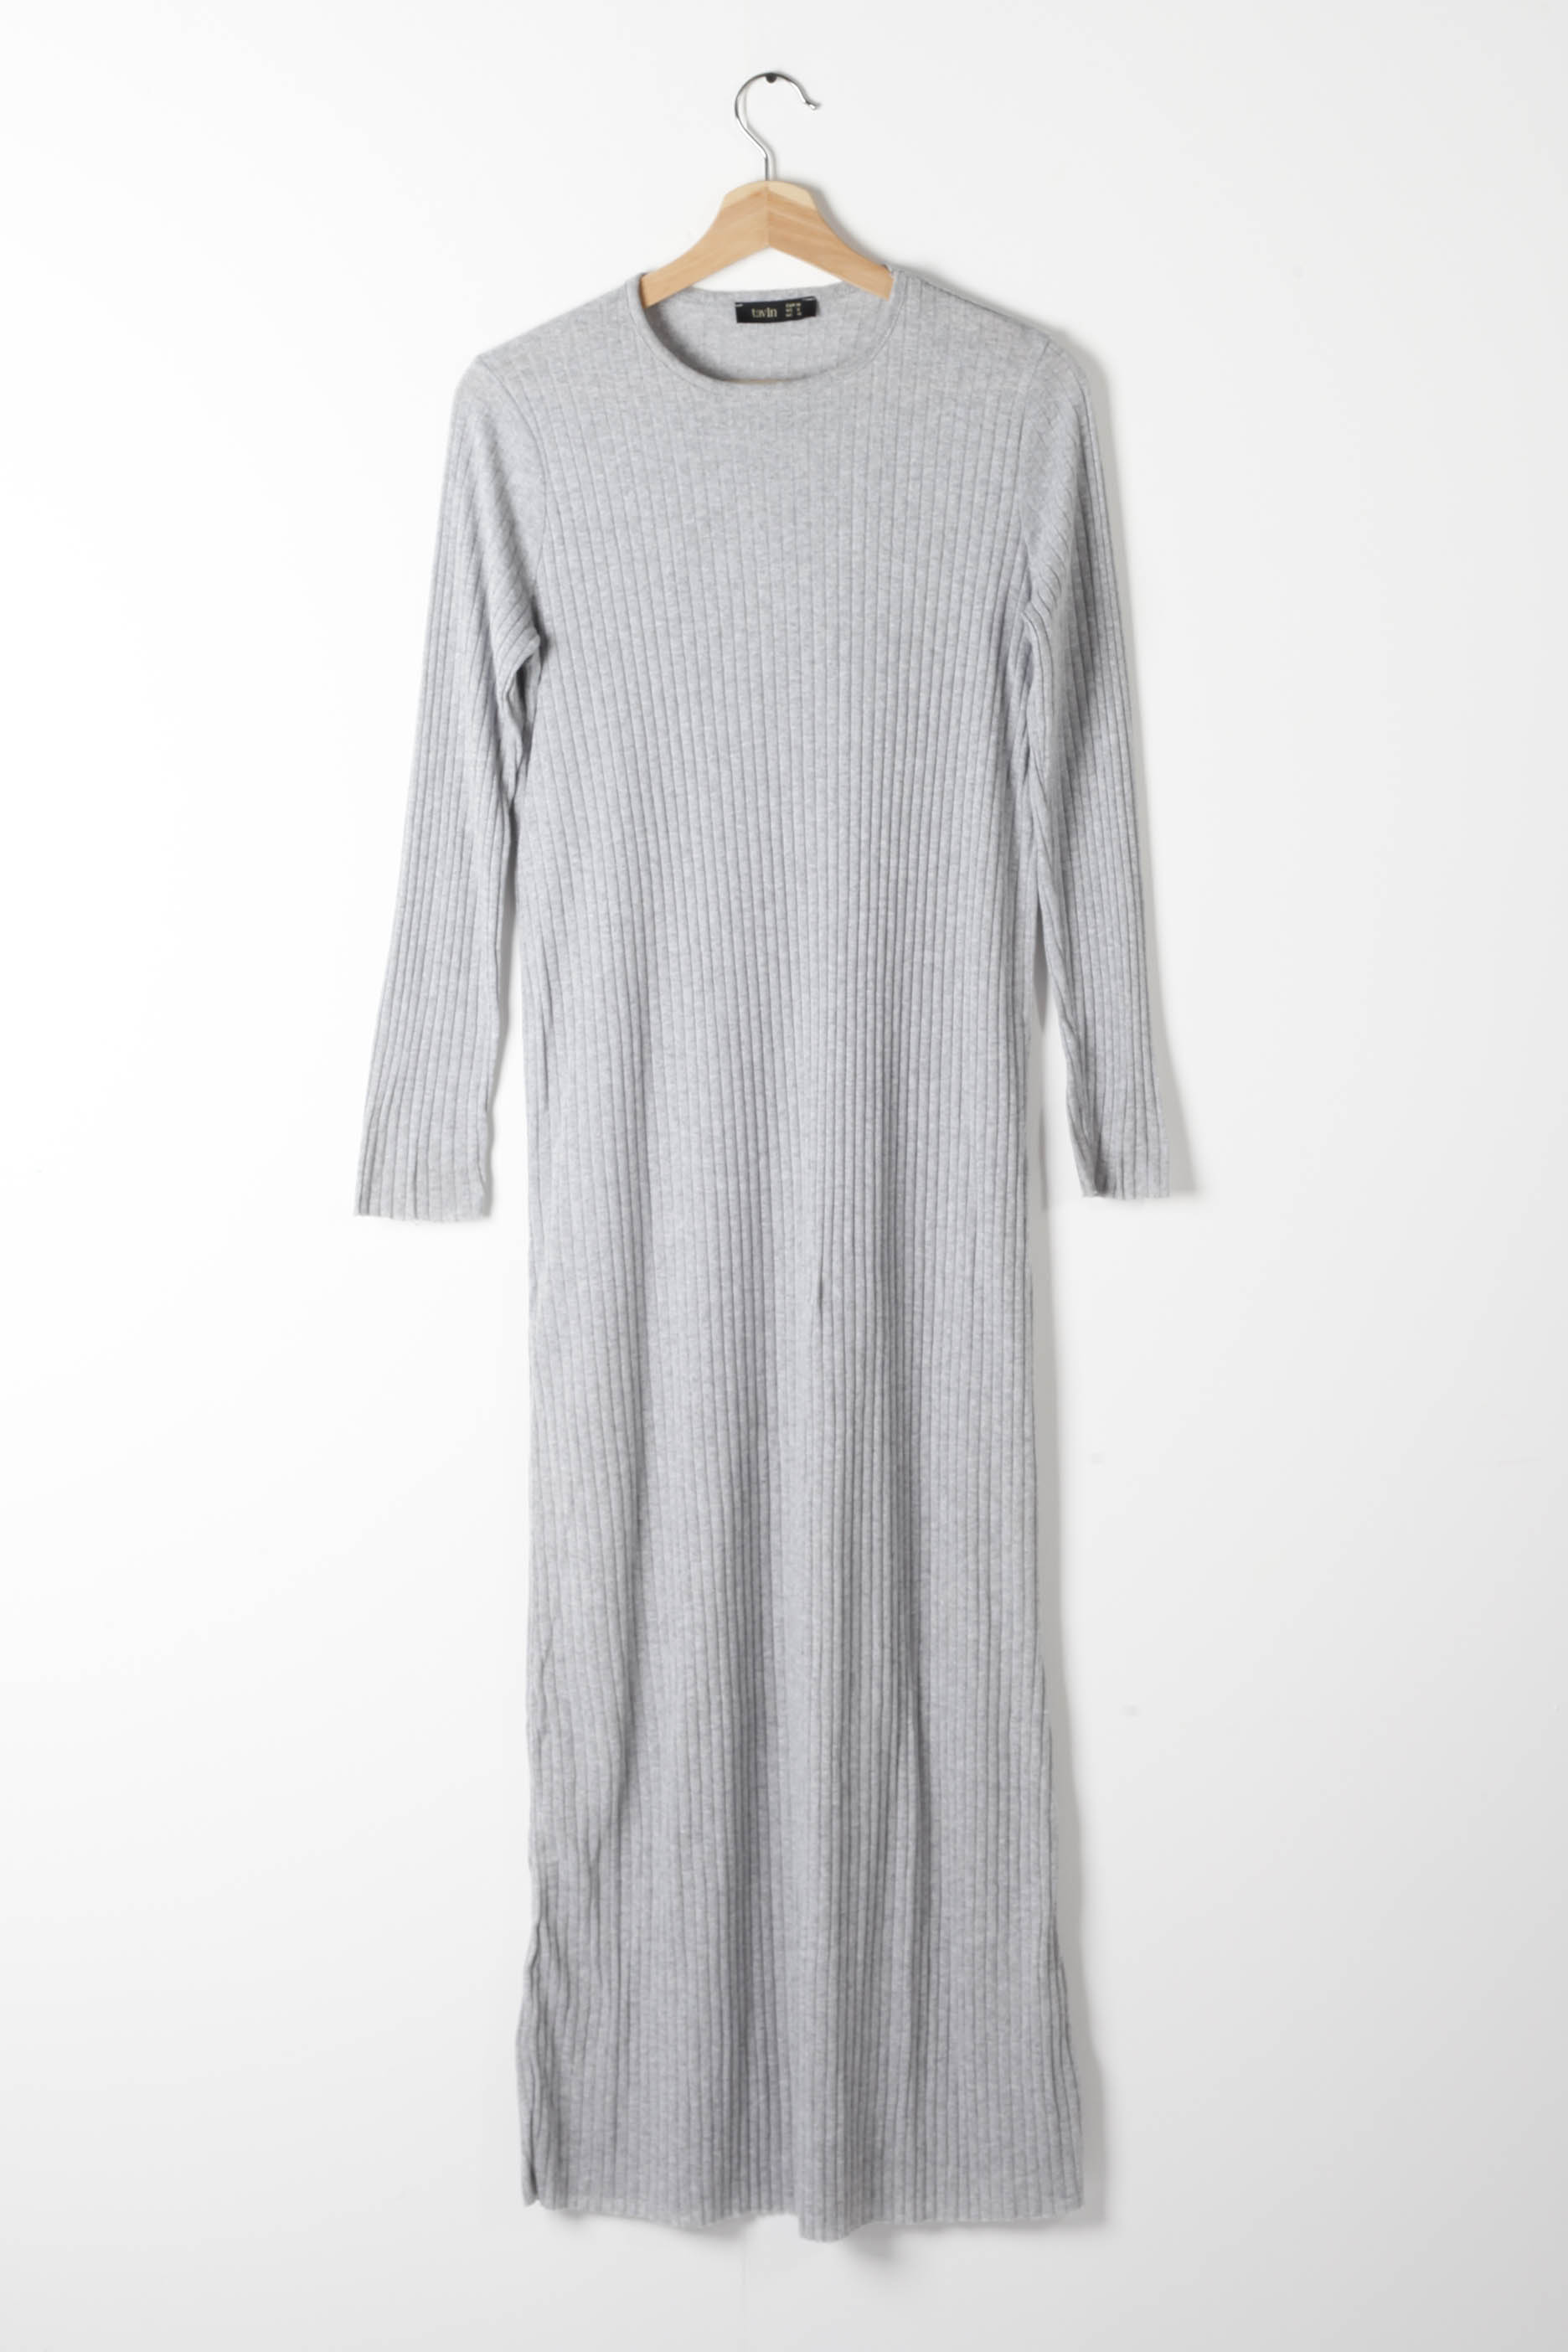 Long Grey Ribbed Dress (Medium)